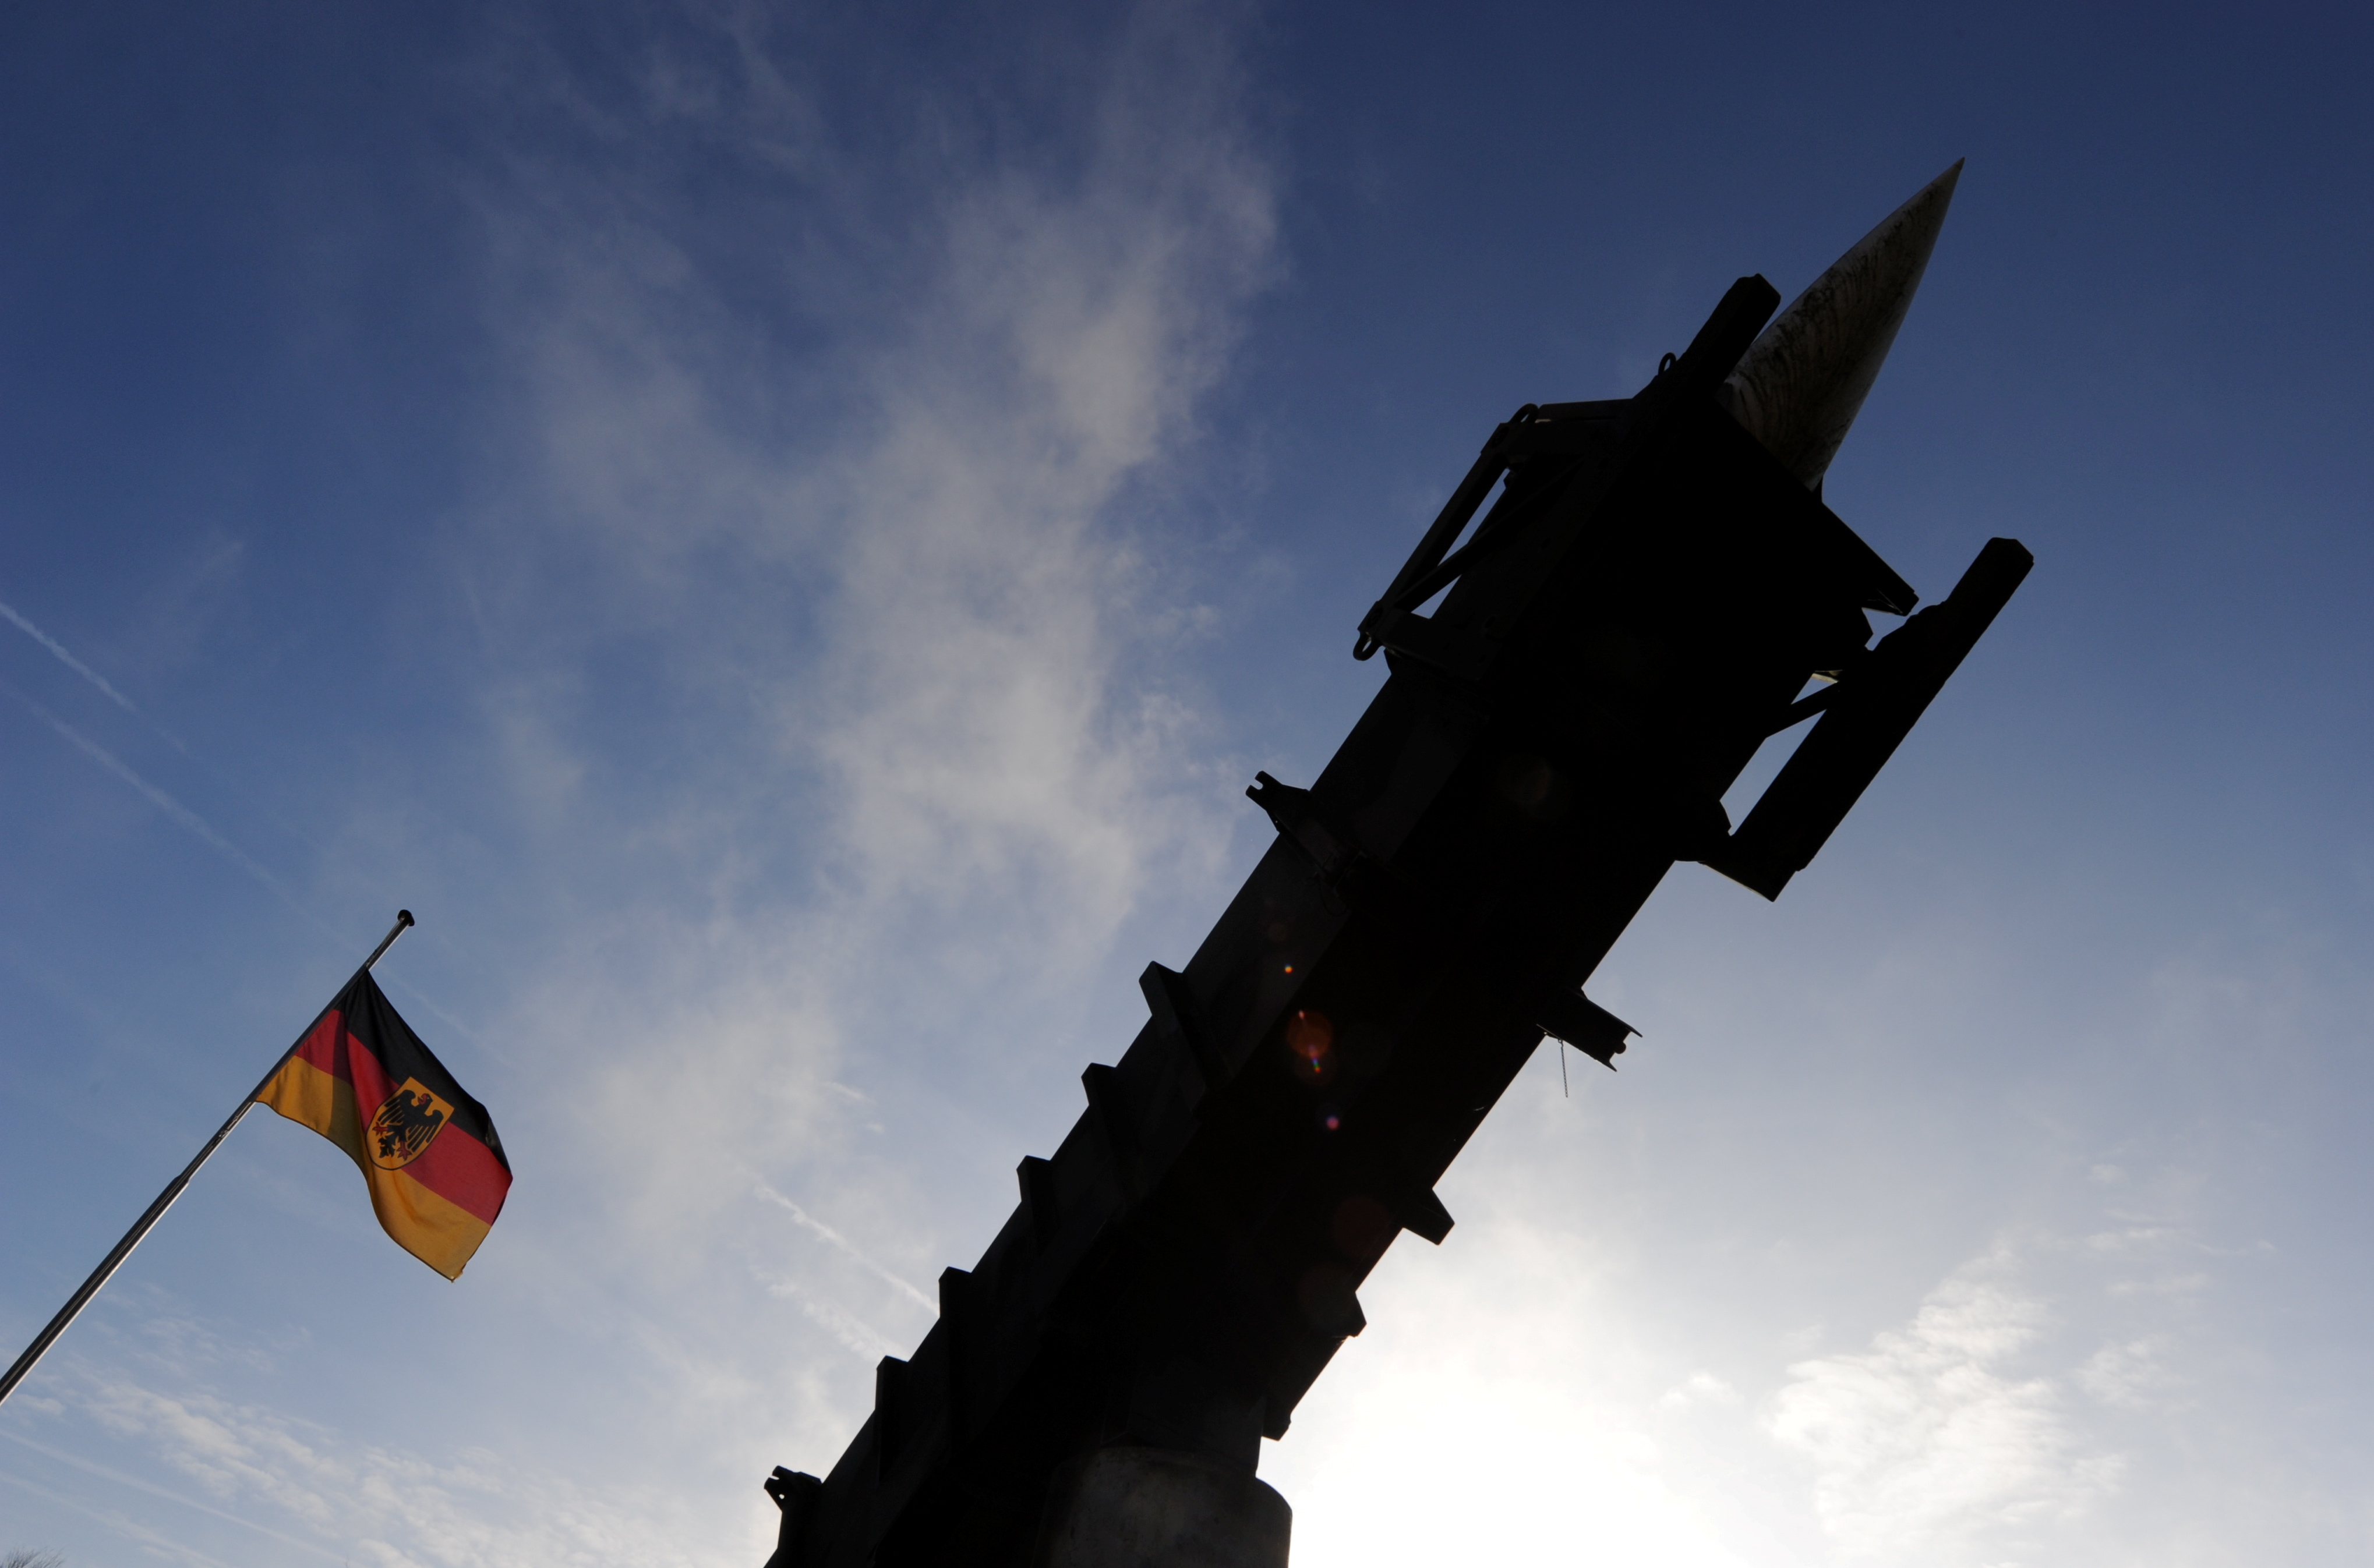 Die Zukunft der integrierten Luft- und Raketenabwehr Deutschlands